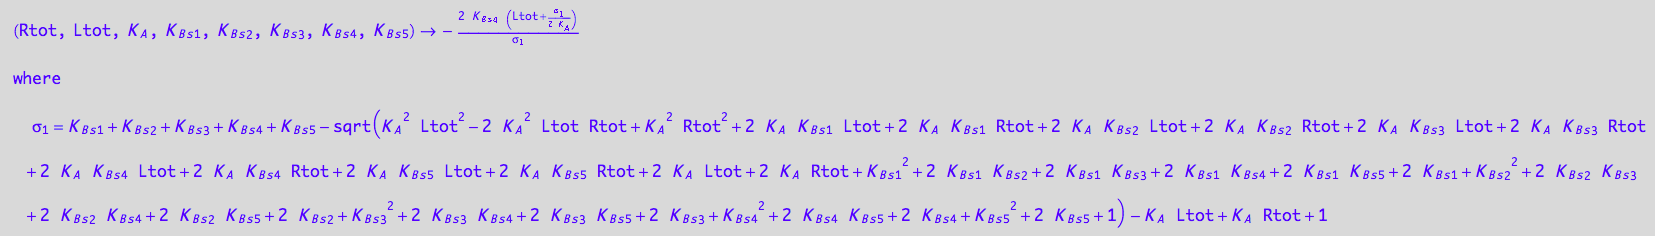 (Rtot, Ltot, K_A, K_B_s_1, K_B_s_2, K_B_s_3, K_B_s_4, K_B_s_5) -> -(2*K_B_s_4*(Ltot + (K_B_s_1 + K_B_s_2 + K_B_s_3 + K_B_s_4 + K_B_s_5 - (K_A^2*Ltot^2 - 2*K_A^2*Ltot*Rtot + K_A^2*Rtot^2 + 2*K_A*K_B_s_1*Ltot + 2*K_A*K_B_s_1*Rtot + 2*K_A*K_B_s_2*Ltot + 2*K_A*K_B_s_2*Rtot + 2*K_A*K_B_s_3*Ltot + 2*K_A*K_B_s_3*Rtot + 2*K_A*K_B_s_4*Ltot + 2*K_A*K_B_s_4*Rtot + 2*K_A*K_B_s_5*Ltot + 2*K_A*K_B_s_5*Rtot + 2*K_A*Ltot + 2*K_A*Rtot + K_B_s_1^2 + 2*K_B_s_1*K_B_s_2 + 2*K_B_s_1*K_B_s_3 + 2*K_B_s_1*K_B_s_4 + 2*K_B_s_1*K_B_s_5 + 2*K_B_s_1 + K_B_s_2^2 + 2*K_B_s_2*K_B_s_3 + 2*K_B_s_2*K_B_s_4 + 2*K_B_s_2*K_B_s_5 + 2*K_B_s_2 + K_B_s_3^2 + 2*K_B_s_3*K_B_s_4 + 2*K_B_s_3*K_B_s_5 + 2*K_B_s_3 + K_B_s_4^2 + 2*K_B_s_4*K_B_s_5 + 2*K_B_s_4 + K_B_s_5^2 + 2*K_B_s_5 + 1)^(1/2) - K_A*Ltot + K_A*Rtot + 1)/(2*K_A)))/(K_B_s_1 + K_B_s_2 + K_B_s_3 + K_B_s_4 + K_B_s_5 - (K_A^2*Ltot^2 - 2*K_A^2*Ltot*Rtot + K_A^2*Rtot^2 + 2*K_A*K_B_s_1*Ltot + 2*K_A*K_B_s_1*Rtot + 2*K_A*K_B_s_2*Ltot + 2*K_A*K_B_s_2*Rtot + 2*K_A*K_B_s_3*Ltot + 2*K_A*K_B_s_3*Rtot + 2*K_A*K_B_s_4*Ltot + 2*K_A*K_B_s_4*Rtot + 2*K_A*K_B_s_5*Ltot + 2*K_A*K_B_s_5*Rtot + 2*K_A*Ltot + 2*K_A*Rtot + K_B_s_1^2 + 2*K_B_s_1*K_B_s_2 + 2*K_B_s_1*K_B_s_3 + 2*K_B_s_1*K_B_s_4 + 2*K_B_s_1*K_B_s_5 + 2*K_B_s_1 + K_B_s_2^2 + 2*K_B_s_2*K_B_s_3 + 2*K_B_s_2*K_B_s_4 + 2*K_B_s_2*K_B_s_5 + 2*K_B_s_2 + K_B_s_3^2 + 2*K_B_s_3*K_B_s_4 + 2*K_B_s_3*K_B_s_5 + 2*K_B_s_3 + K_B_s_4^2 + 2*K_B_s_4*K_B_s_5 + 2*K_B_s_4 + K_B_s_5^2 + 2*K_B_s_5 + 1)^(1/2) - K_A*Ltot + K_A*Rtot + 1)